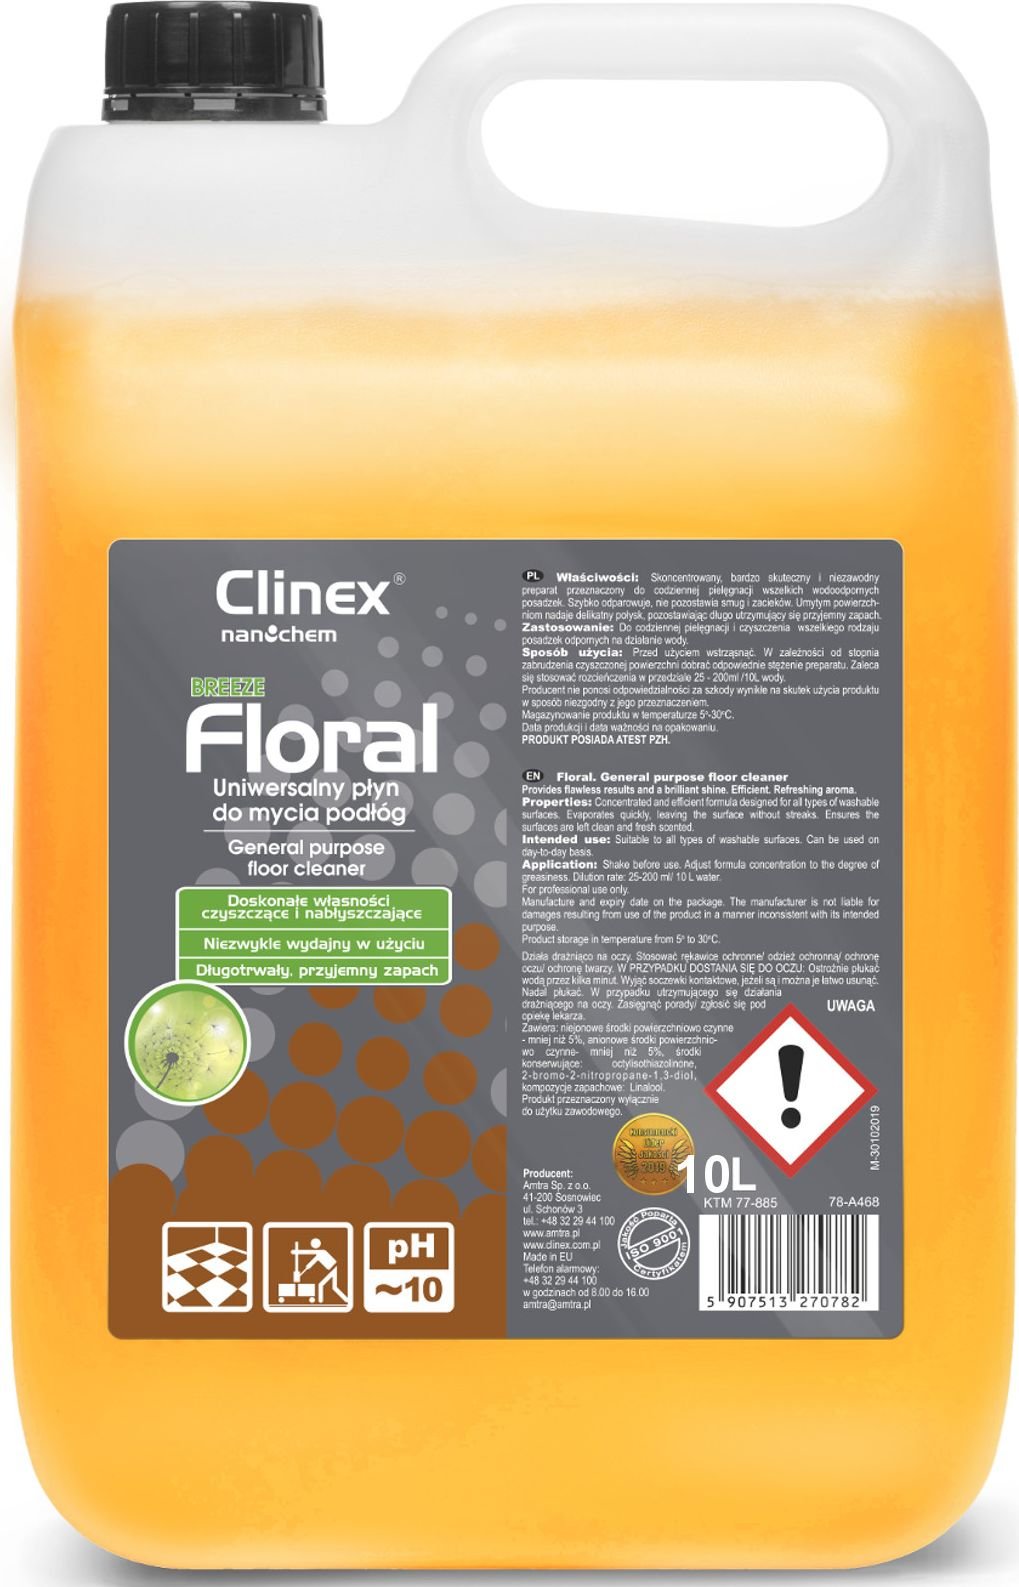 Clinex Produs de curățat podele fără dungi, strălucire CLINEX Floral - Breeze 10L Detergent pentru podea fără dungi, strălucire CLINEX Floral - Breeze 10L